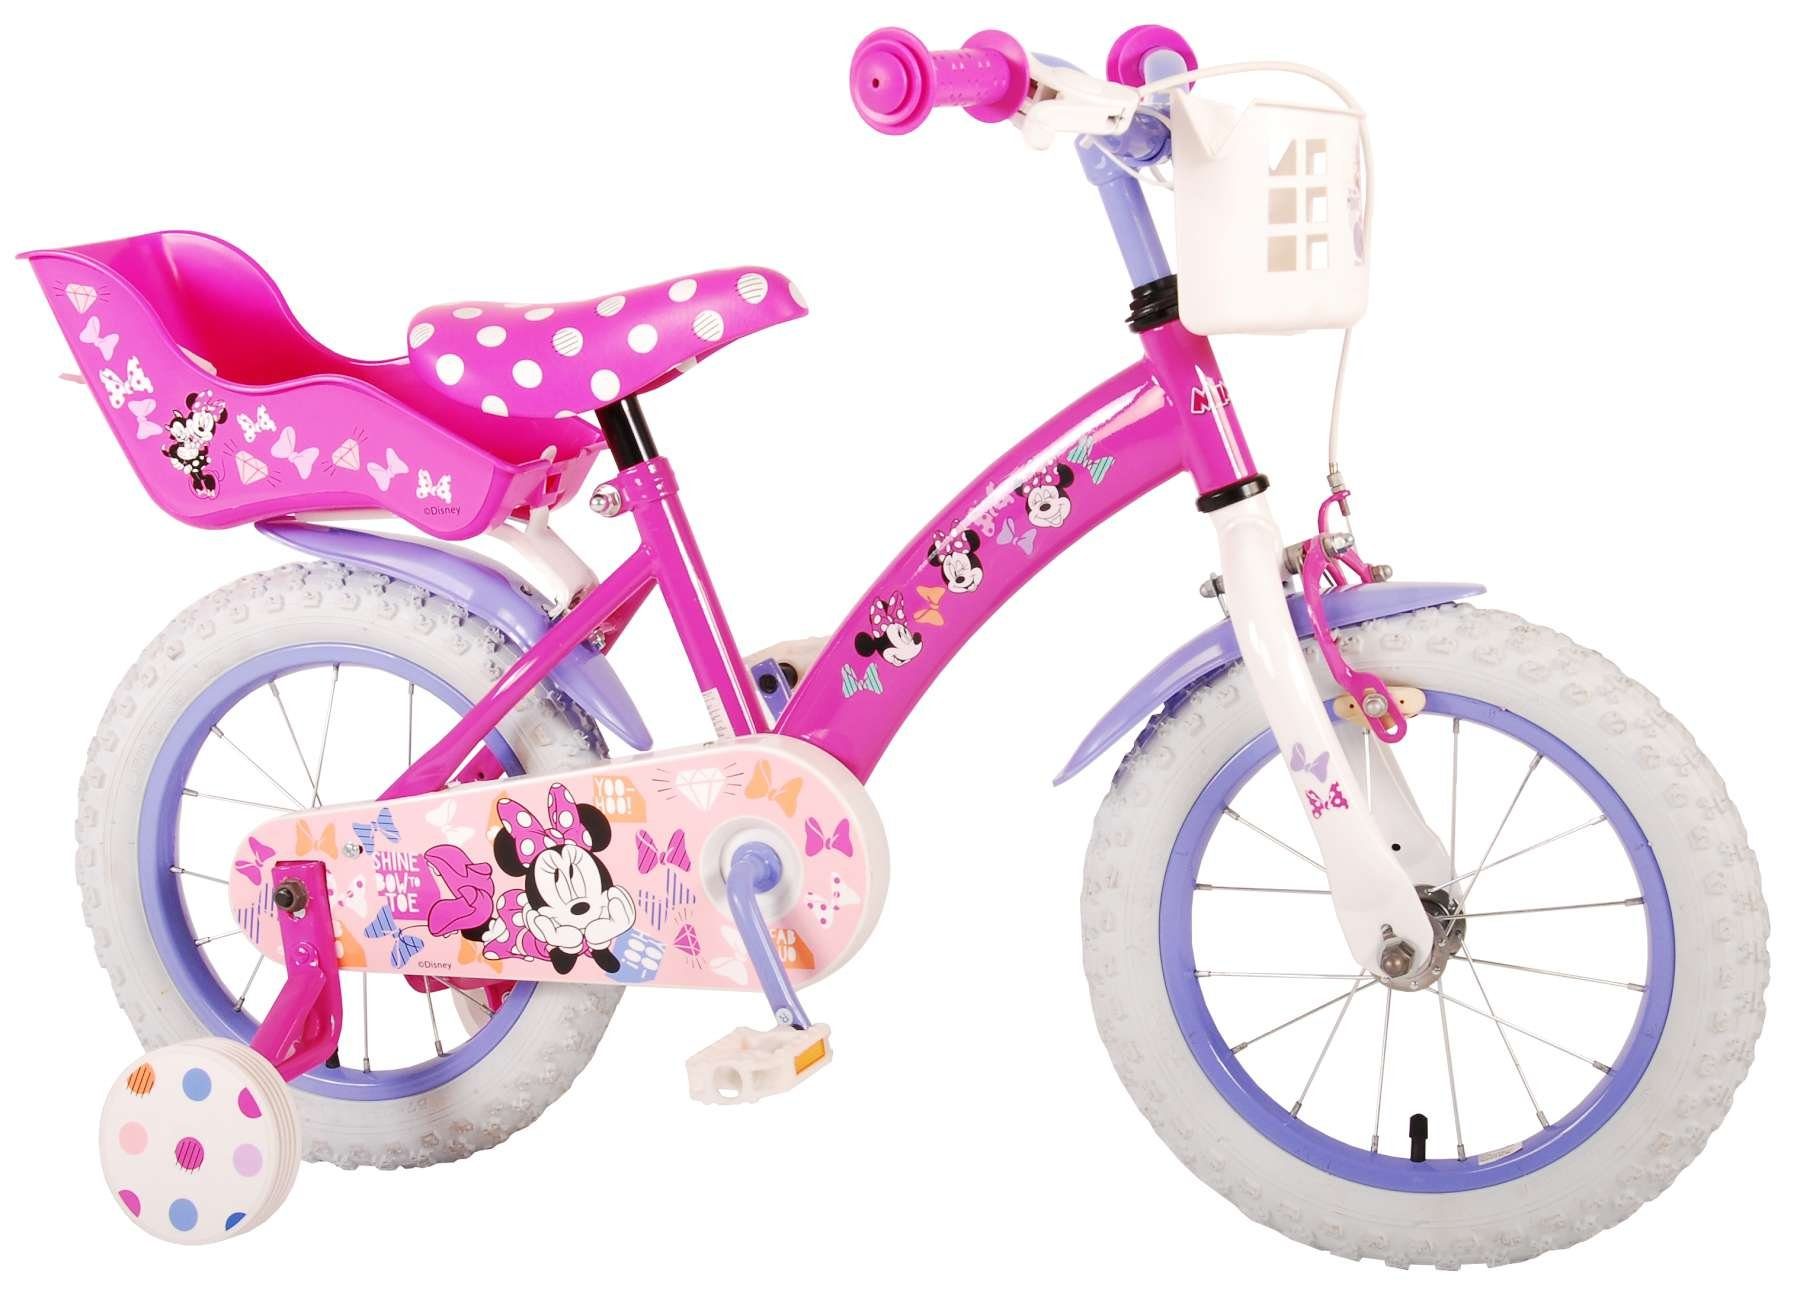 TPFSports Kinderfahrrad Disney Minnie 14 Zoll mit Rücktritt + Handbremse, 1 Gang, (Mädchen Fahrrad - Rutschfeste Sicherheitsgriffe), Kinder Fahrrad 14 Zoll mit Stützräder Laufrad Mädchen Kinderrad